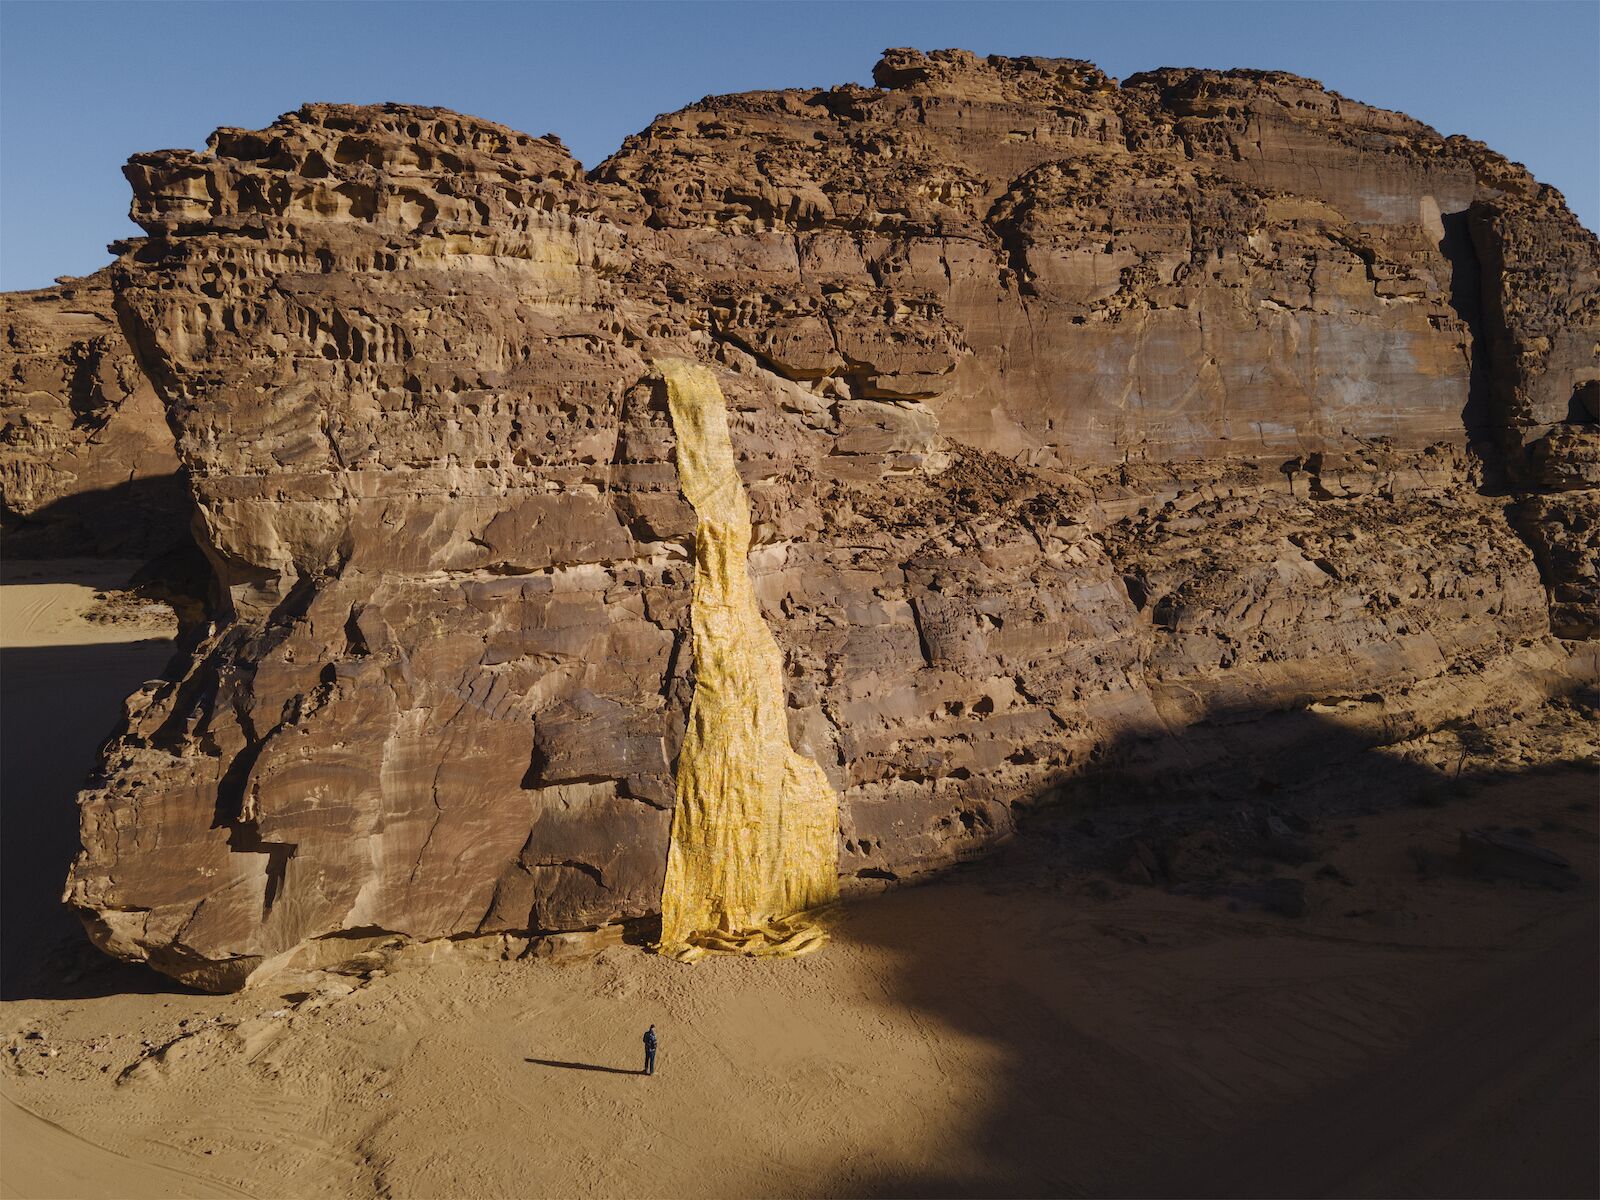 Artwork of an illusory gold waterfall in the Saudi Arabian desert for Desert X 2022.